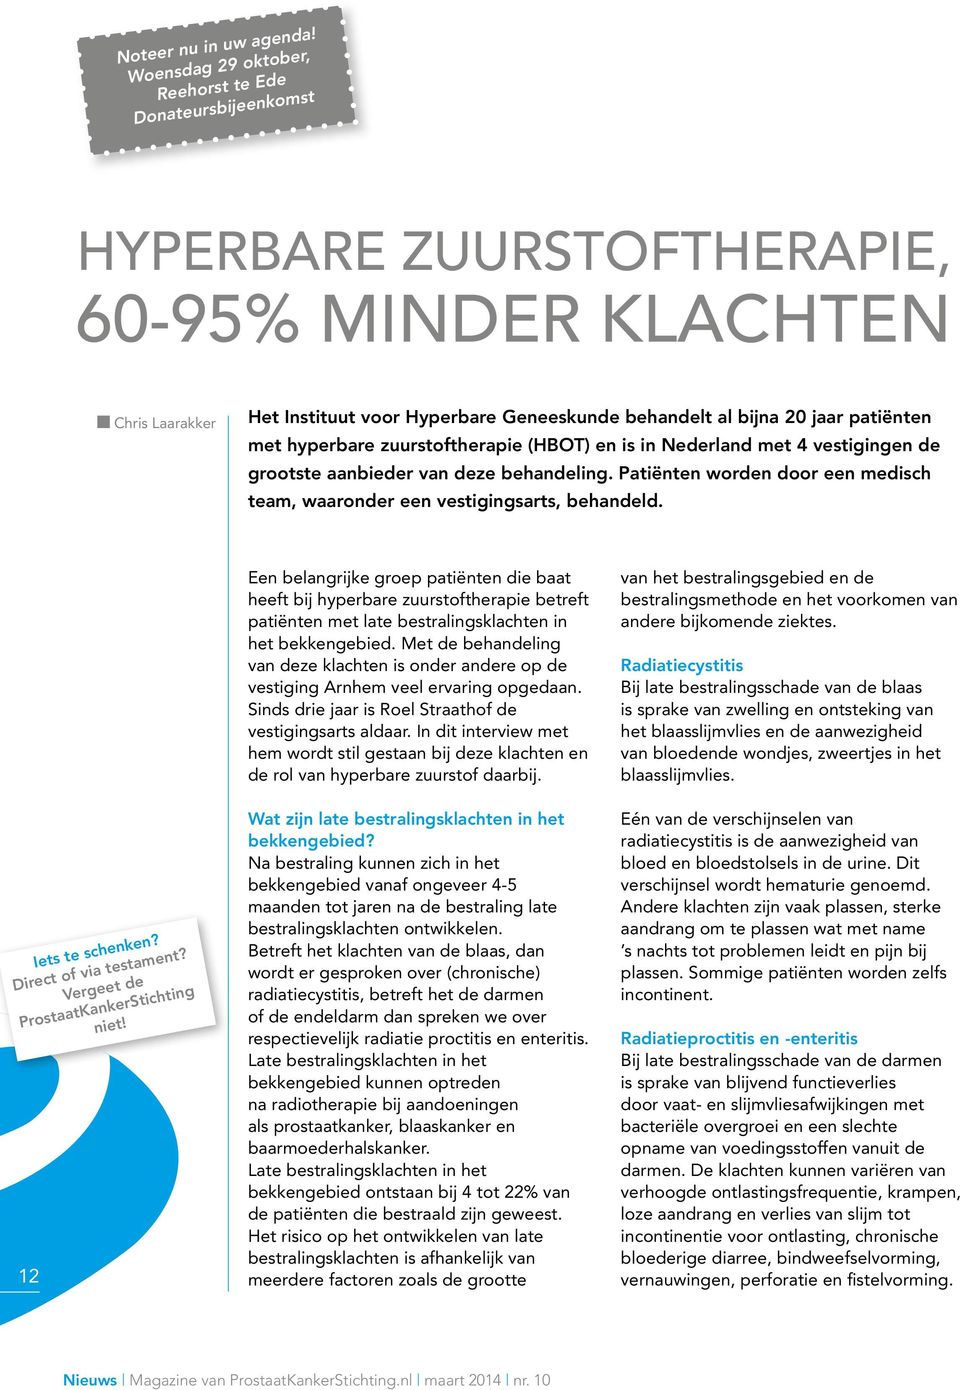 patiënten met hyperbare zuurstoftherapie (HBOT) en is in Nederland met 4 vestigingen de grootste aanbieder van deze behandeling.